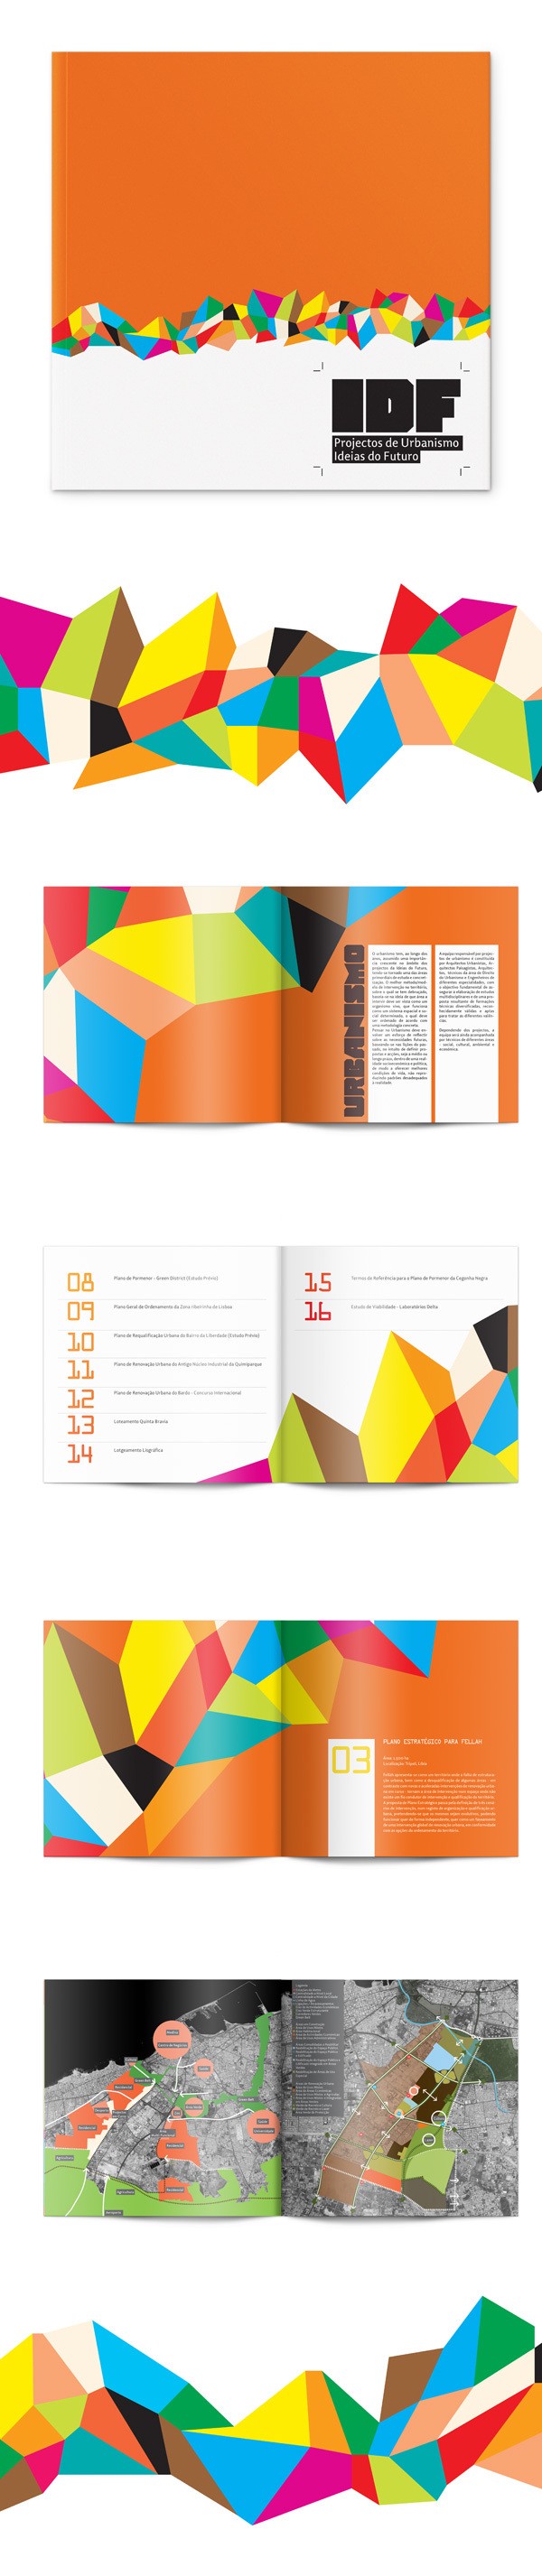 创意简洁风格的画册和折页设计欣赏,PS教程,图老师教程网